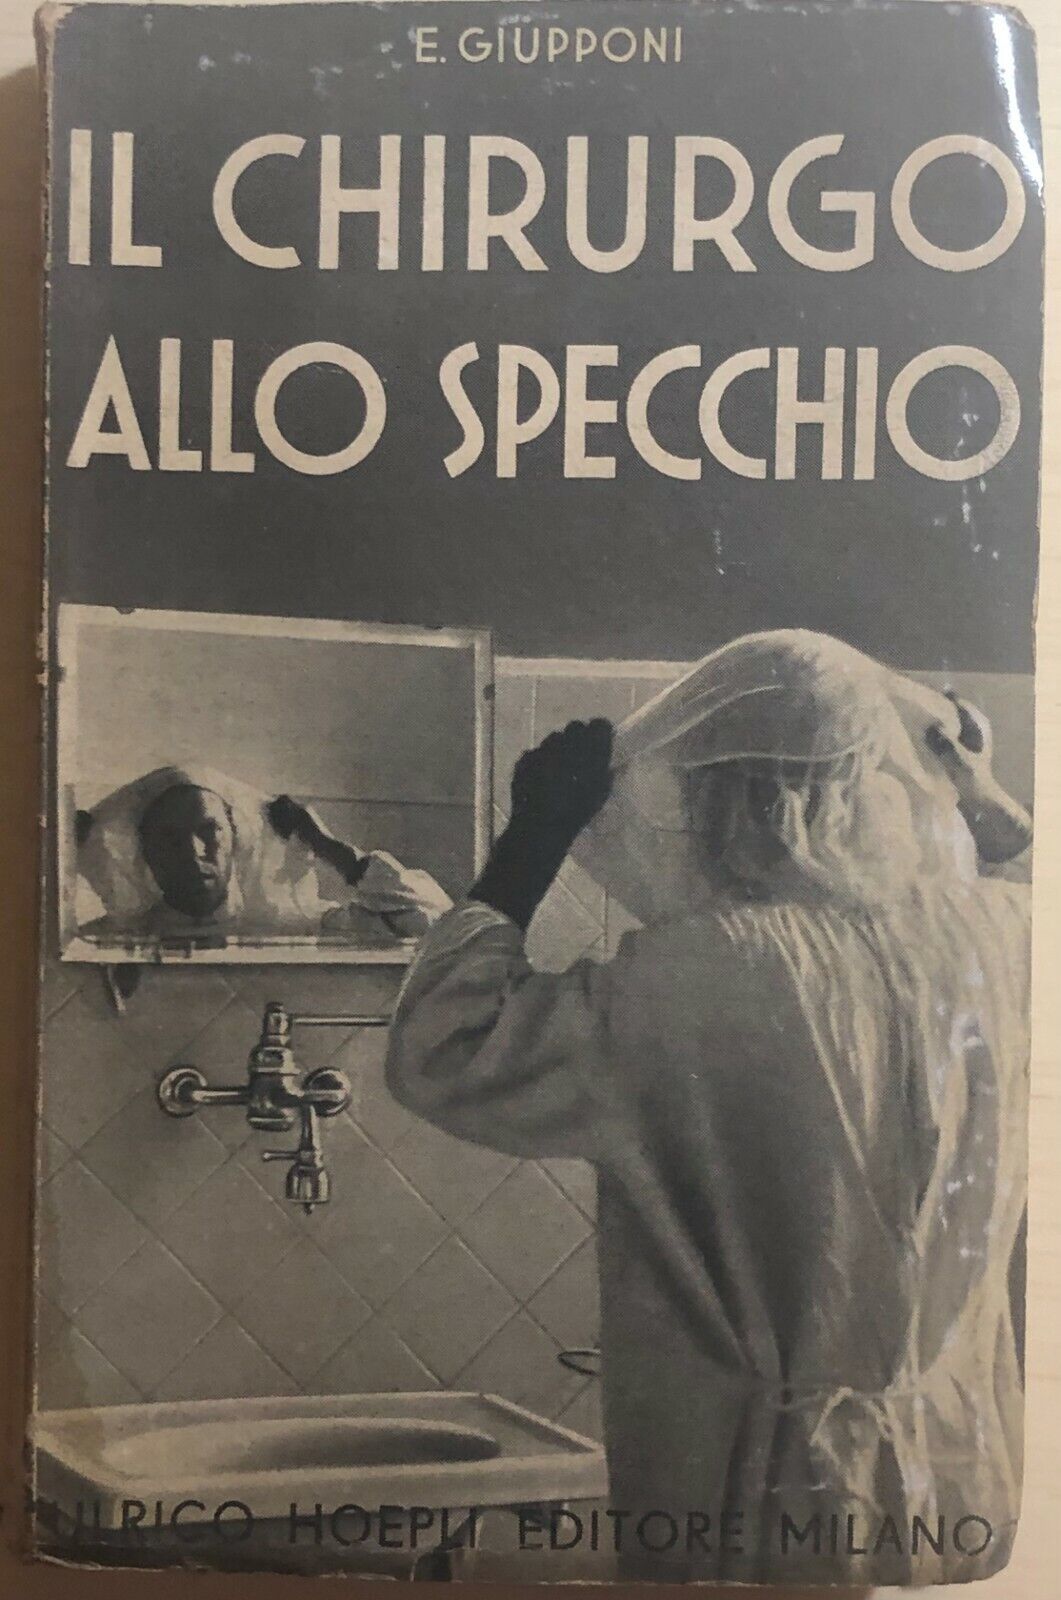 Il chirurgo allo specchio di E. Giupponi,  1938,  Ulrico Hoepli Editore Milano